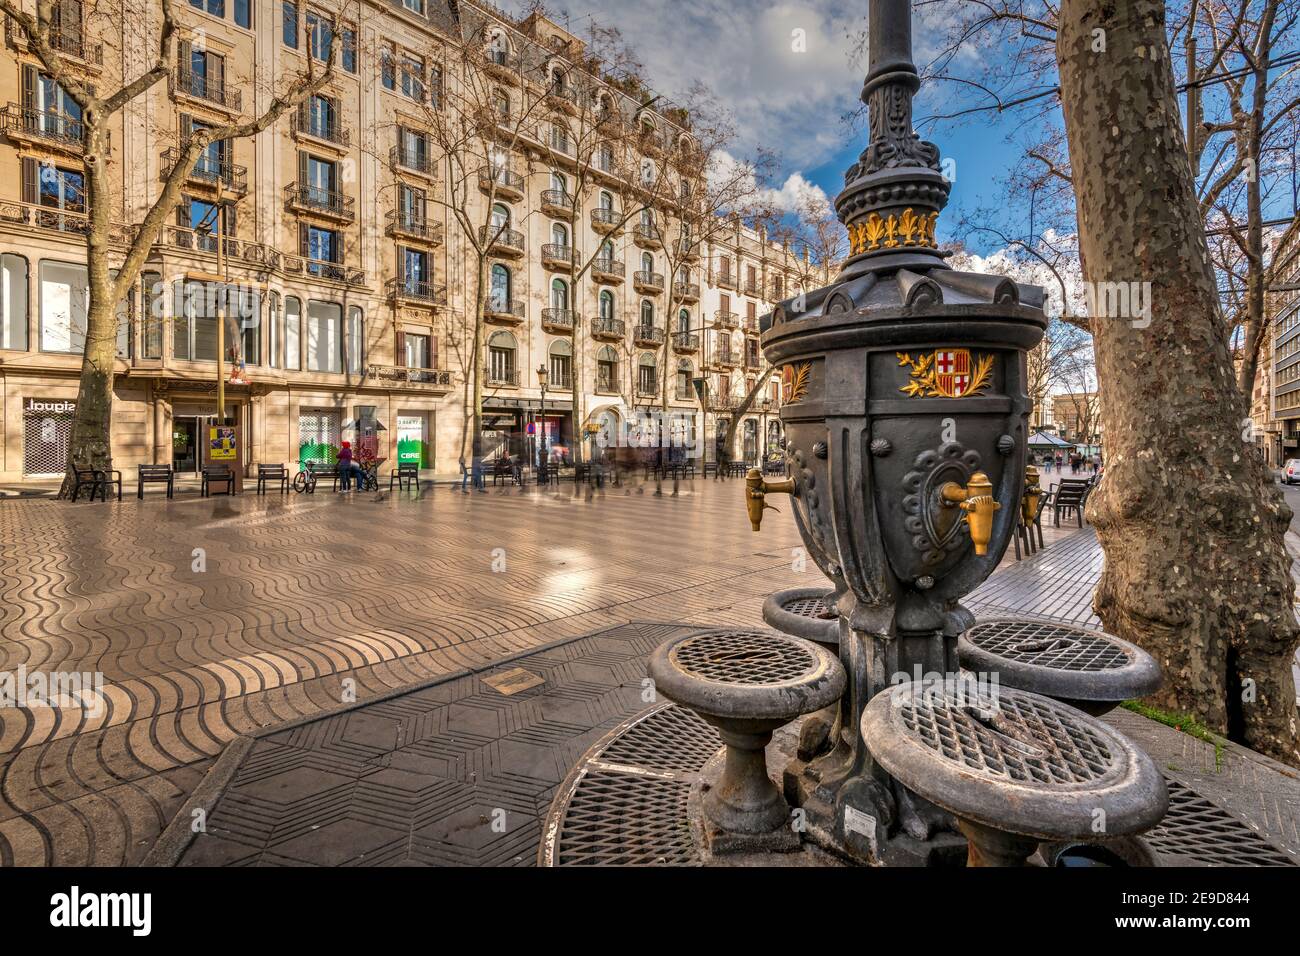 Font de Canaletes, fontaine à boire, la Rambla, Barcelone, Catalogne, Espagne Banque D'Images